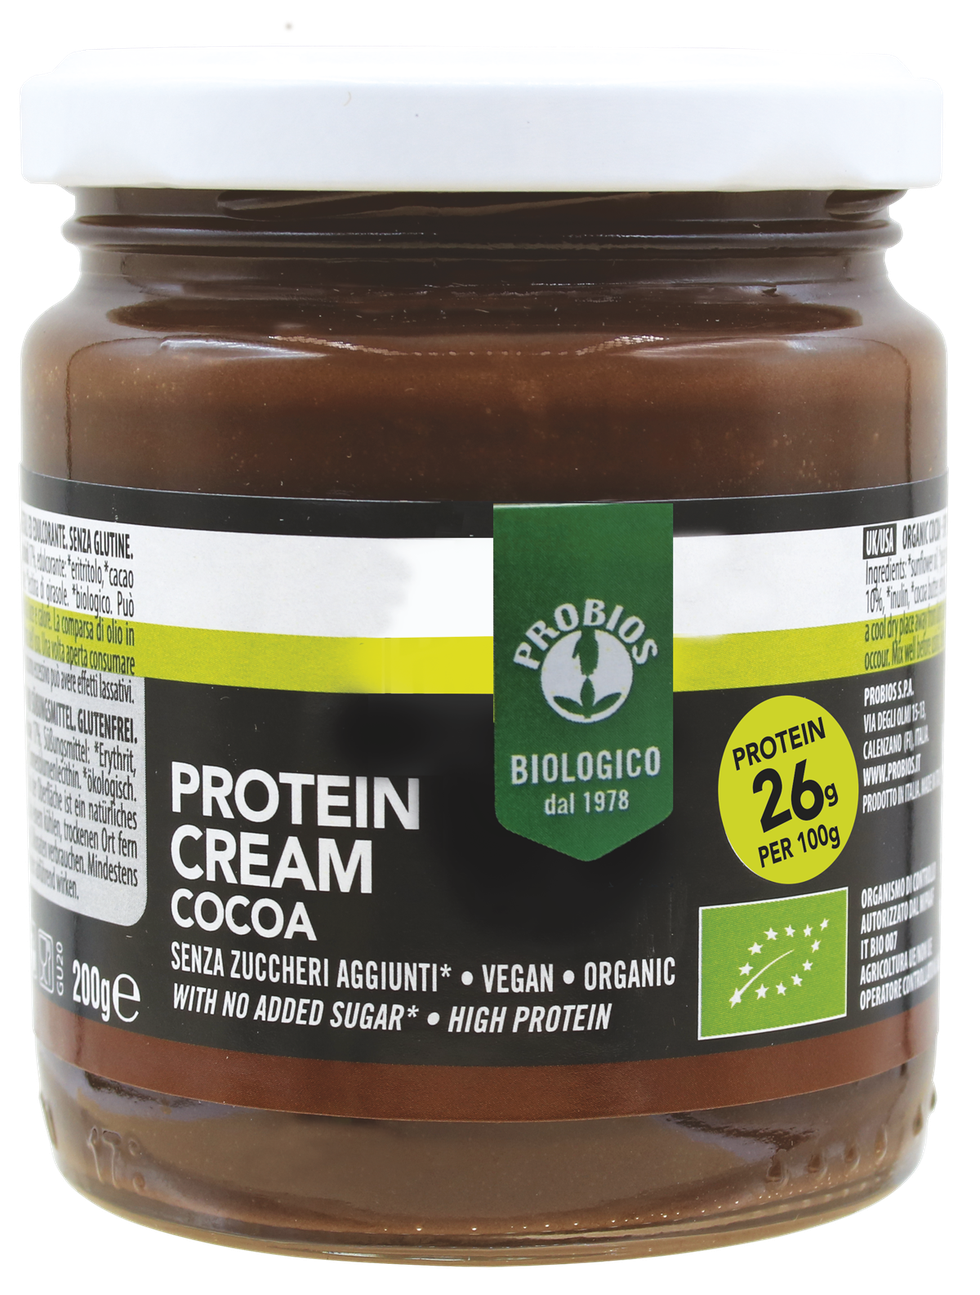 Protein Cream Cocoa BioChampion è una crema spalmabile biologica al cacao ad alto contenuto di proteine. Senza glutine, senza latte e lattosio. È base di arachidi, cacao magro in polvere e proteine dei piselli. 